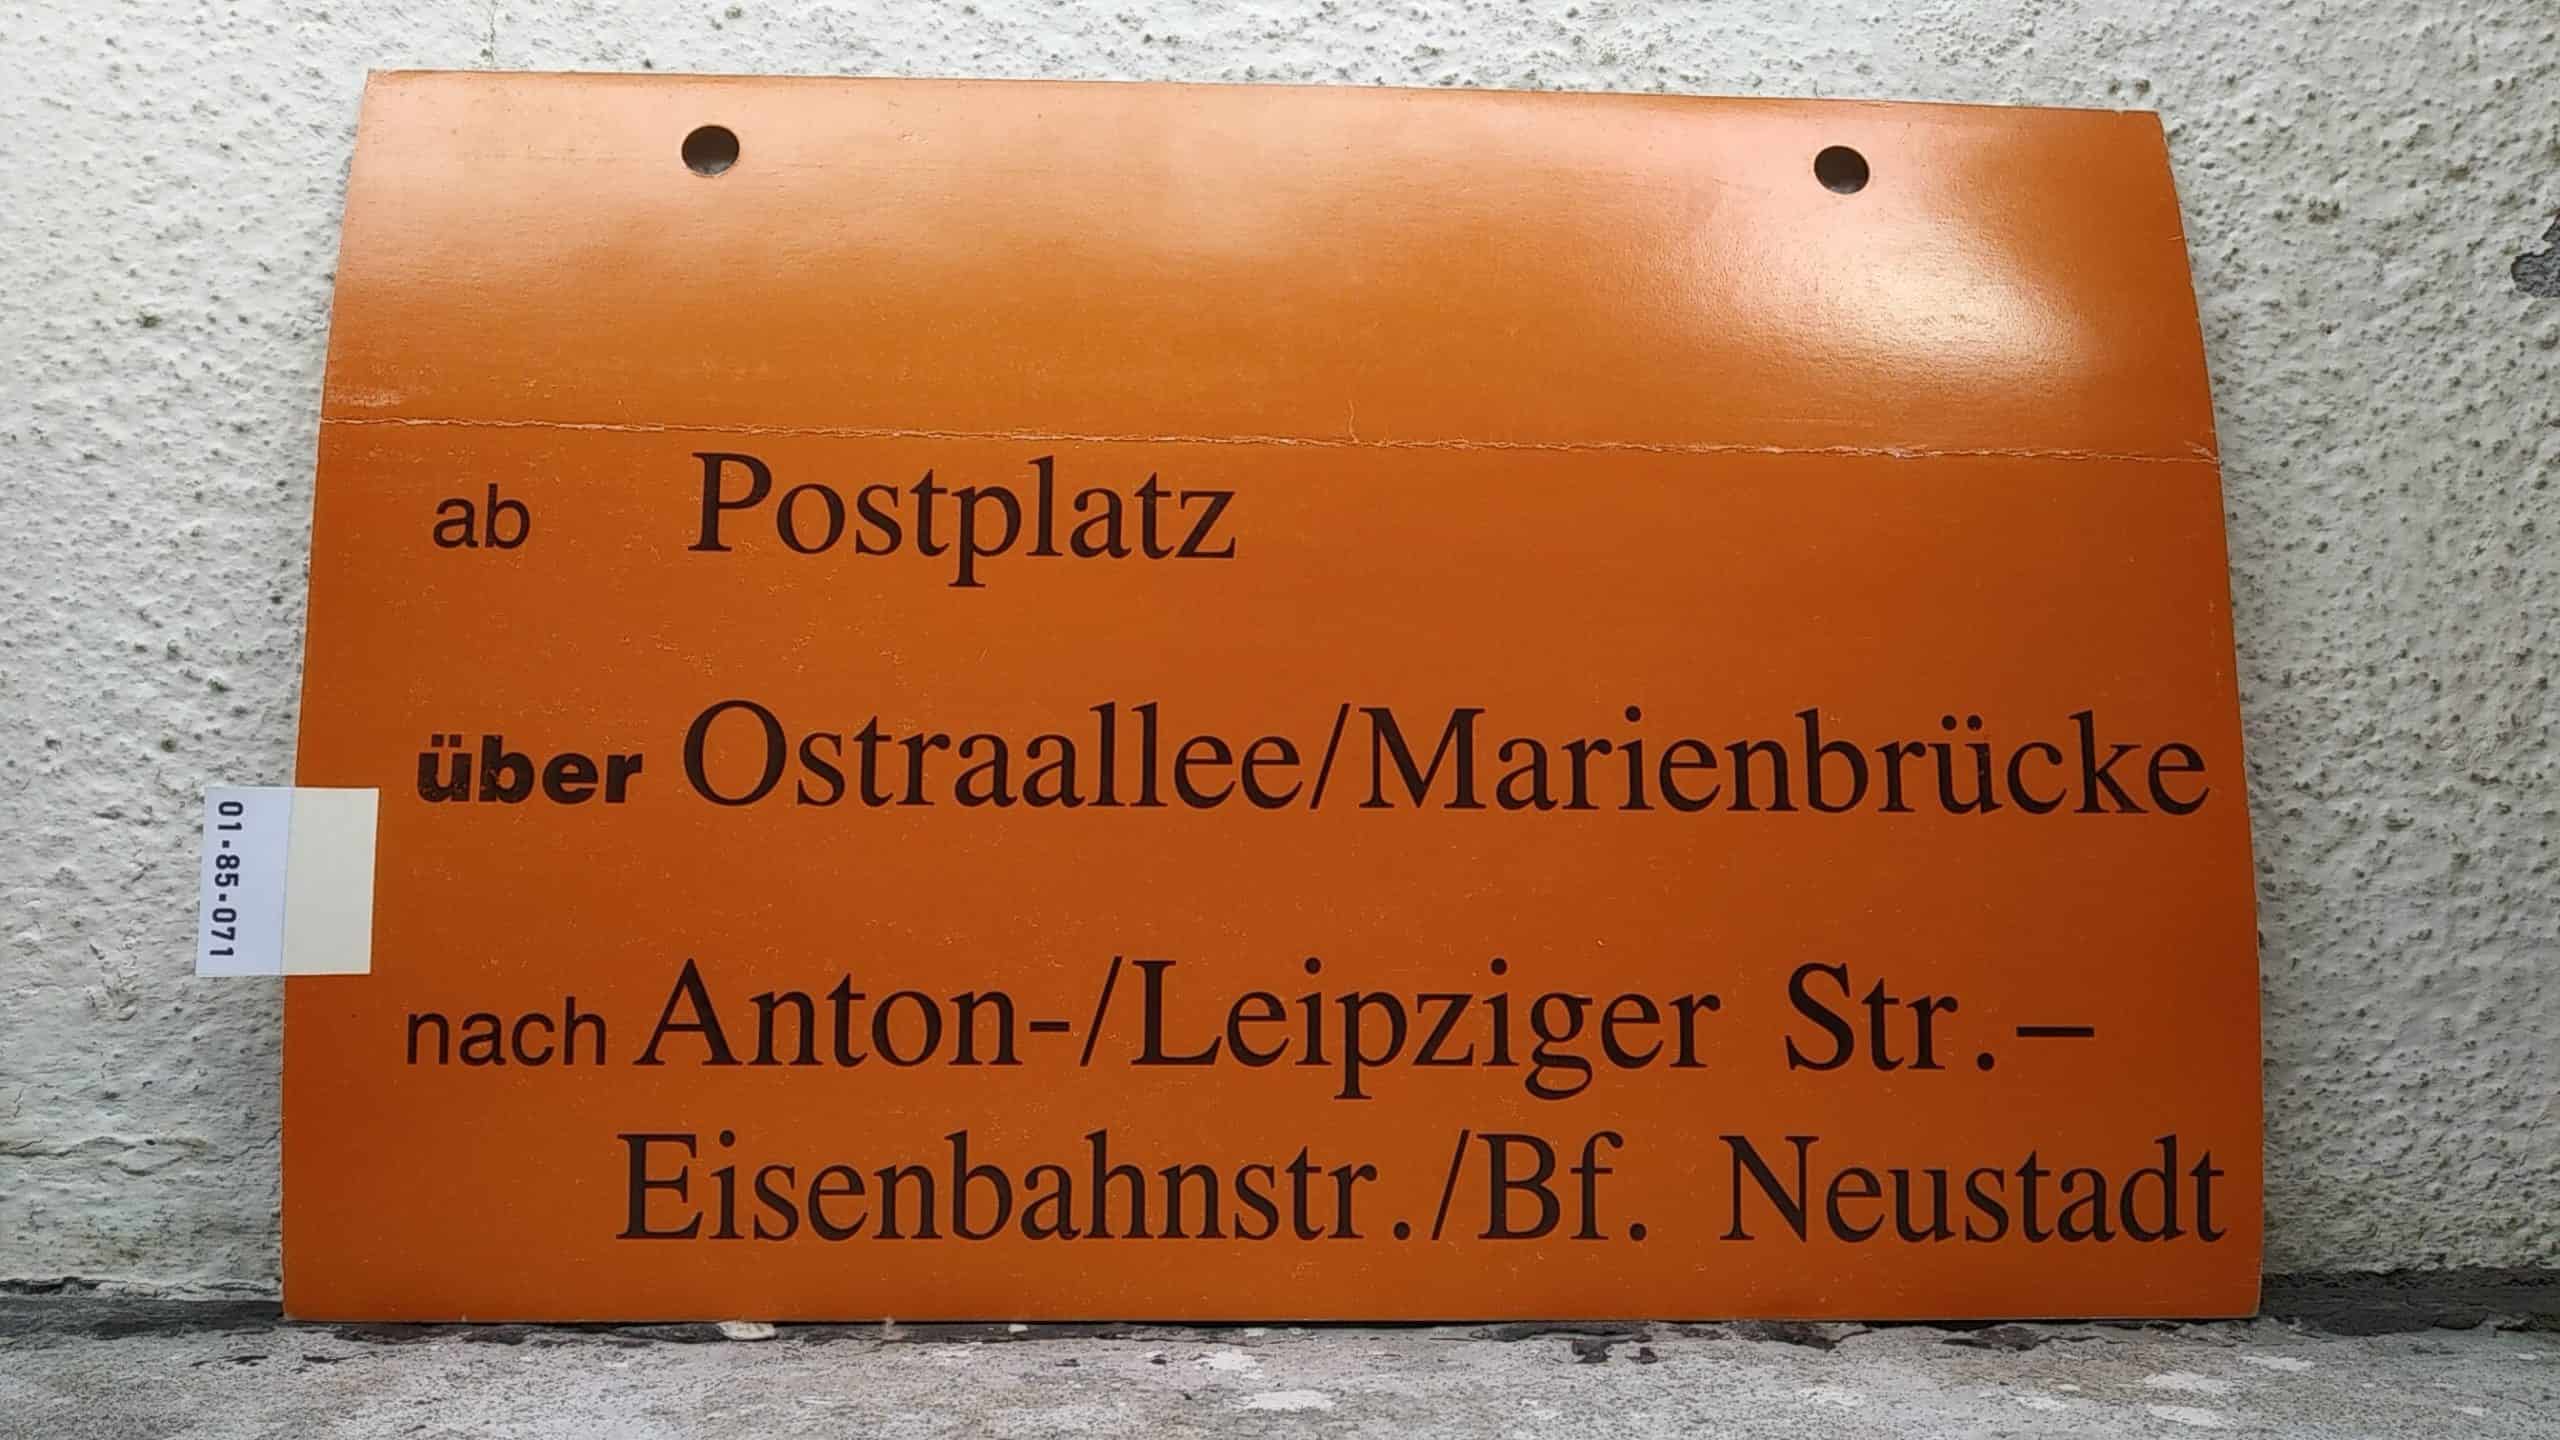 Ein seltenes Straßenbahn-Umleitungsschild aus Dresden: ab Postplatz über Ostraallee/Marienbrücke nach Anton-/Leipziger Str.- Eisenbahnstr./Bf. Neustadt